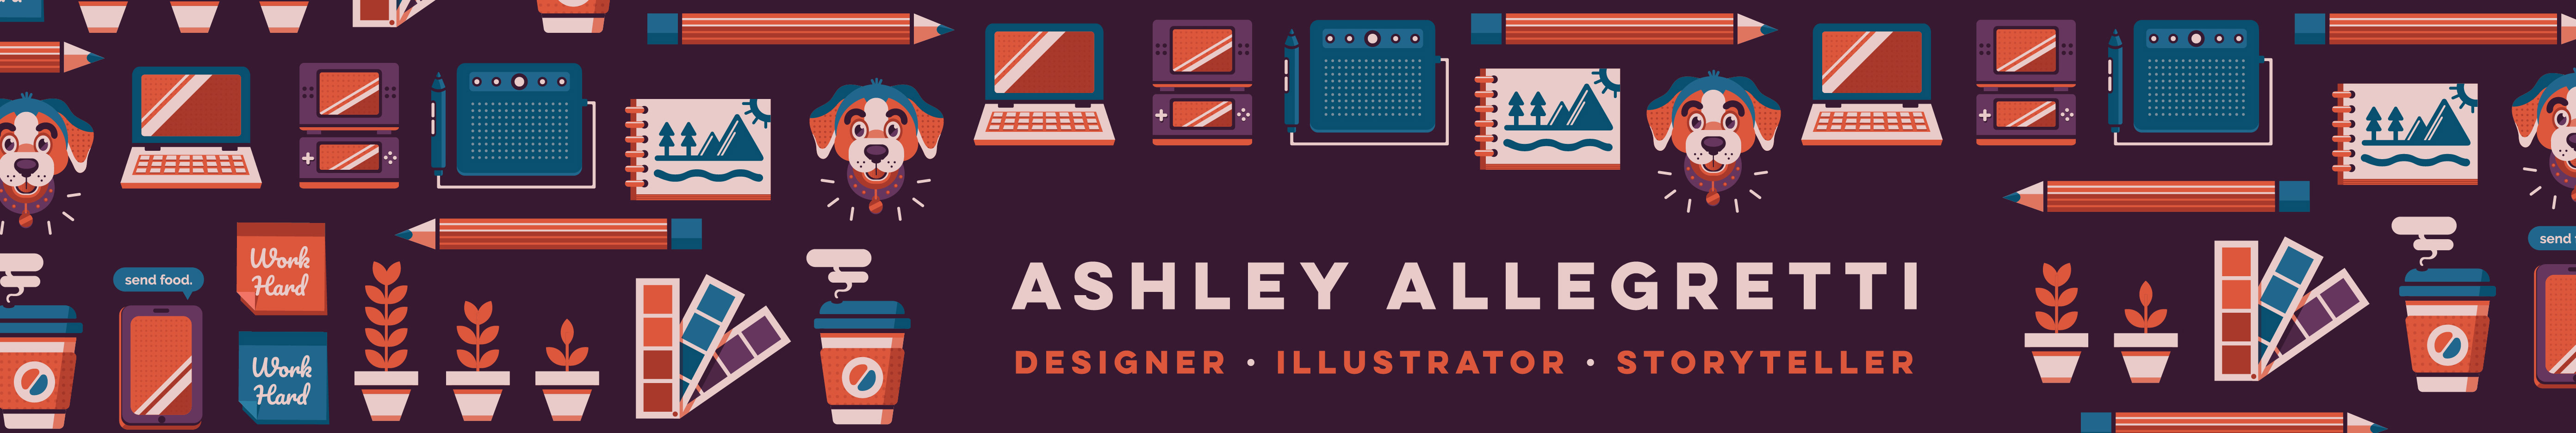 Ashley Allegretti's profile banner